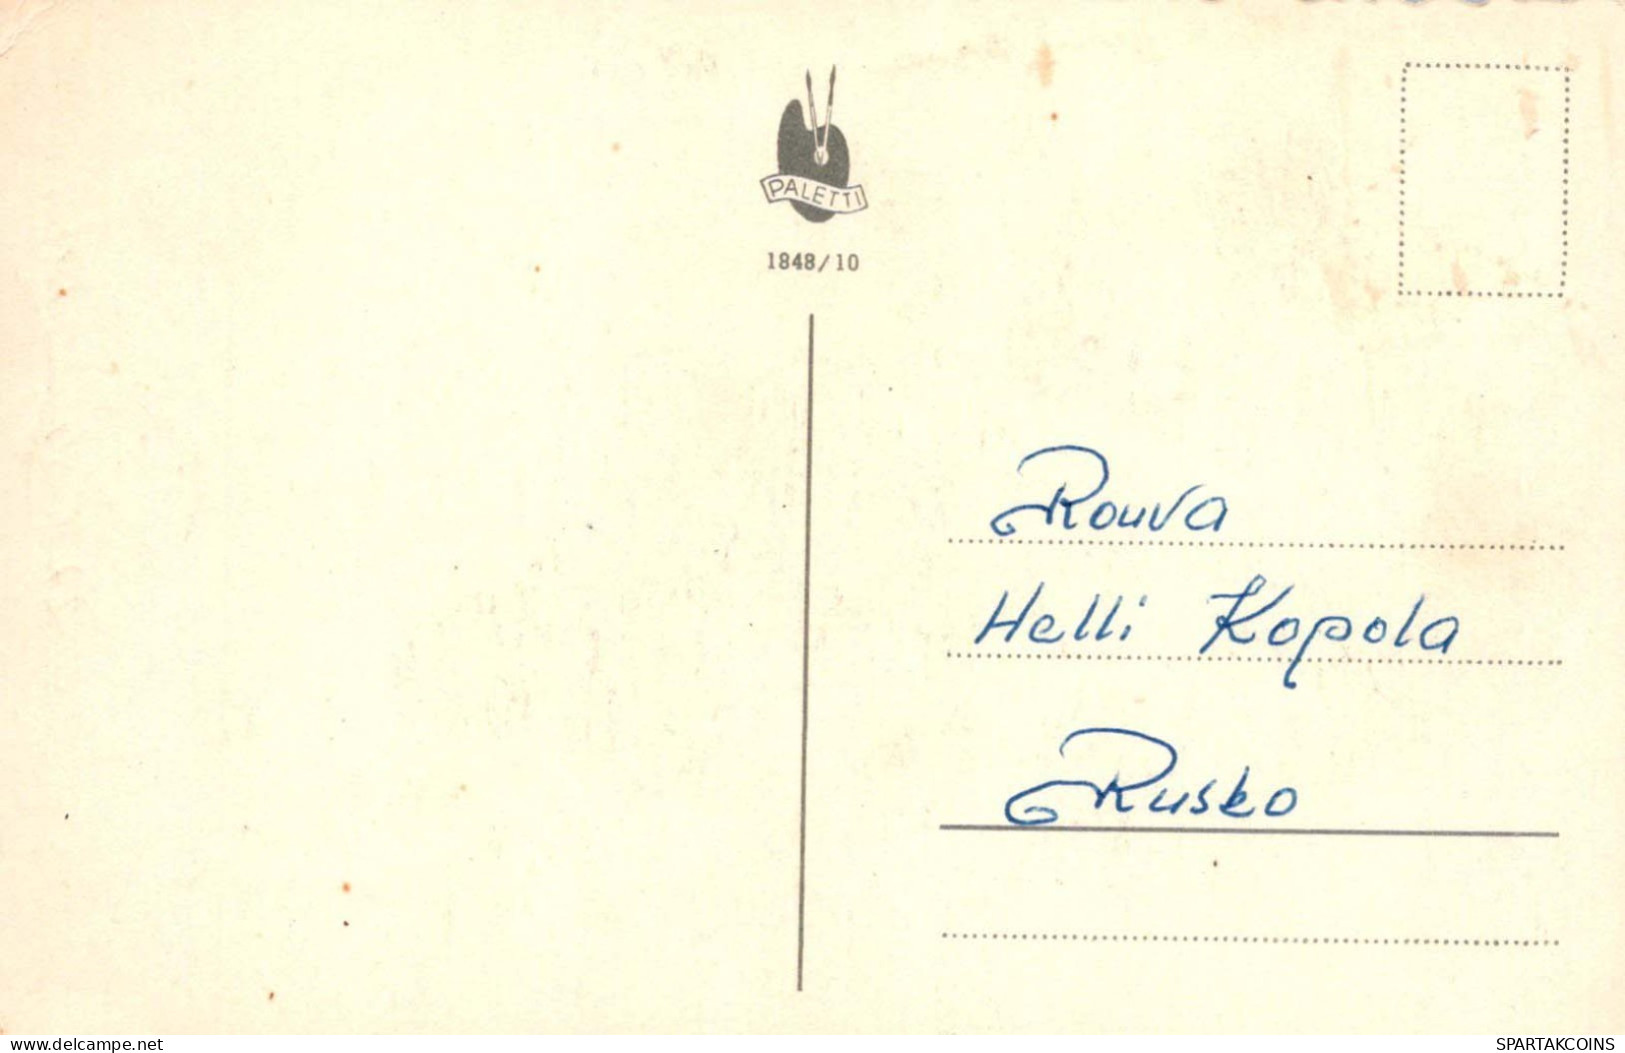 FLORES Vintage Tarjeta Postal CPA #PKE497.A - Flores